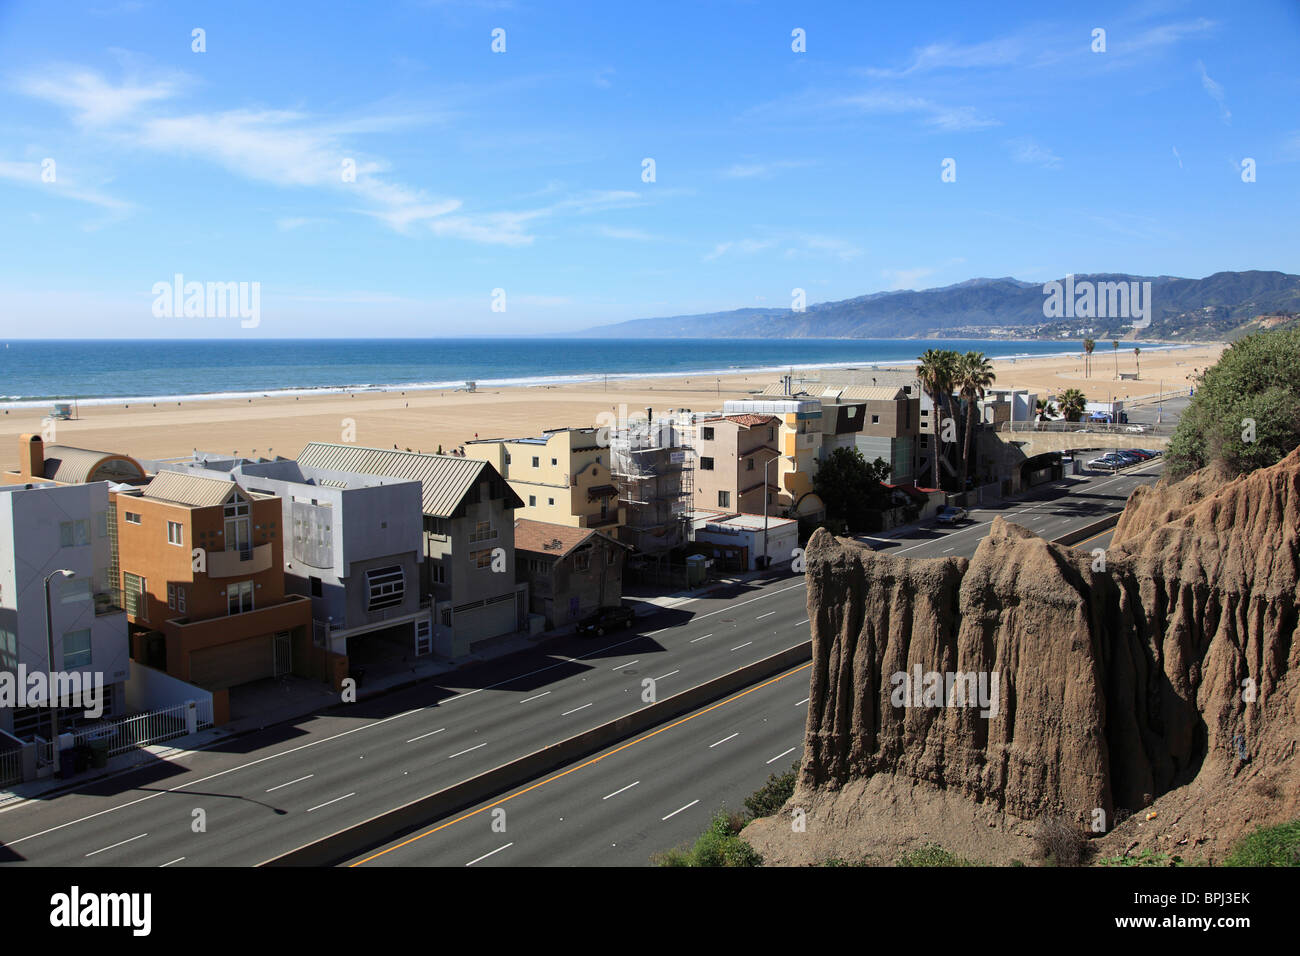 Autoroute de la côte pacifique, Santa Monica, Los Angeles, Californie, États-Unis d'Amérique, Amérique du Nord Banque D'Images